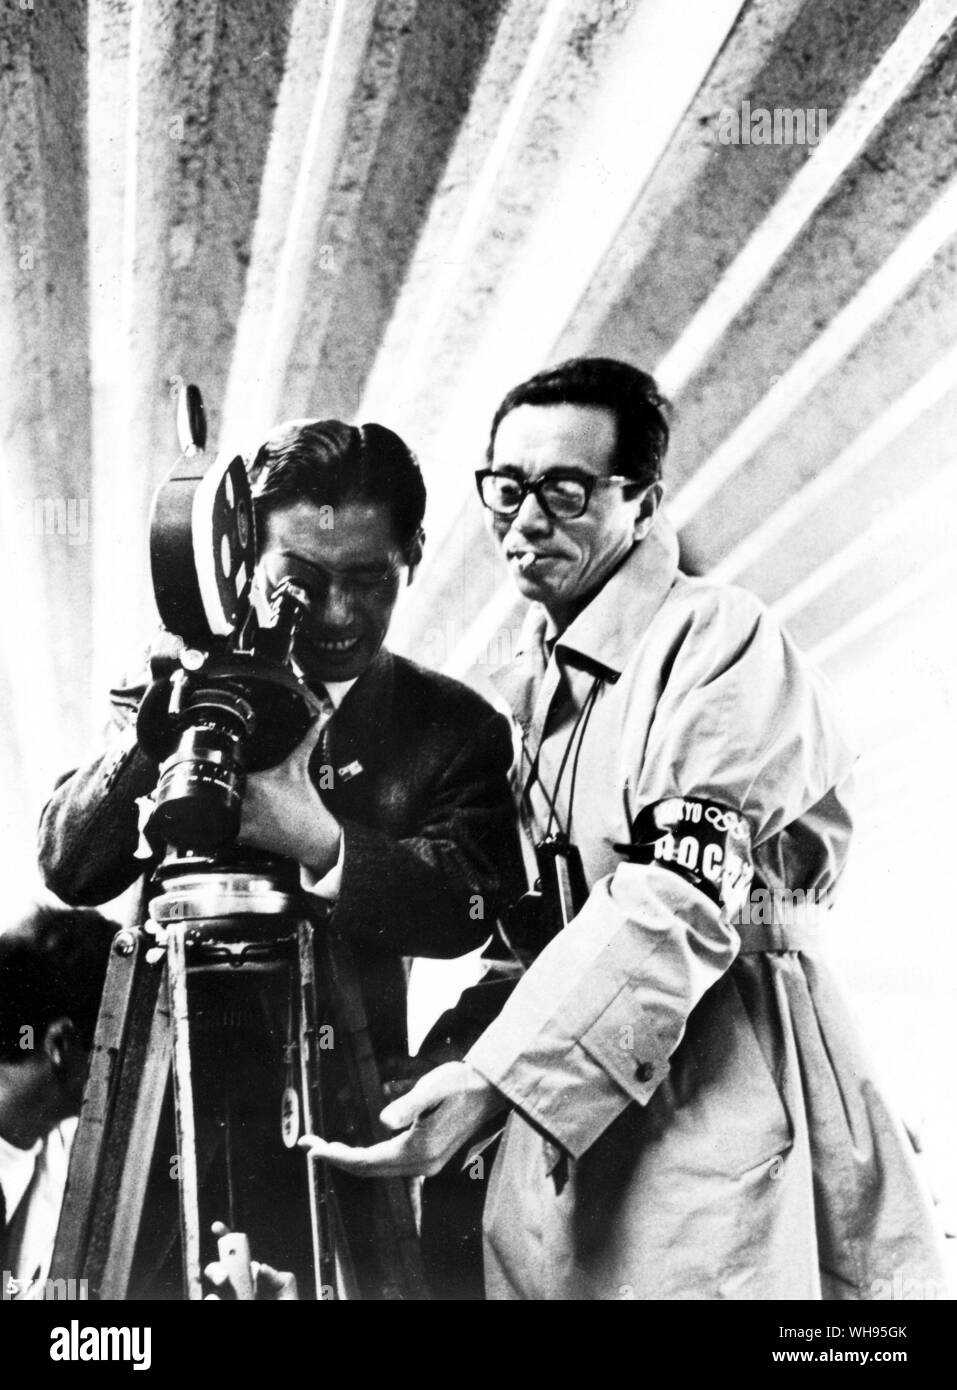 Le Japon, Tokyo Jeux Olympiques, 1964 : Kon Ichikawa diriger le tournage de son documentaire de l'Jeux olympiques de 1964.. Banque D'Images